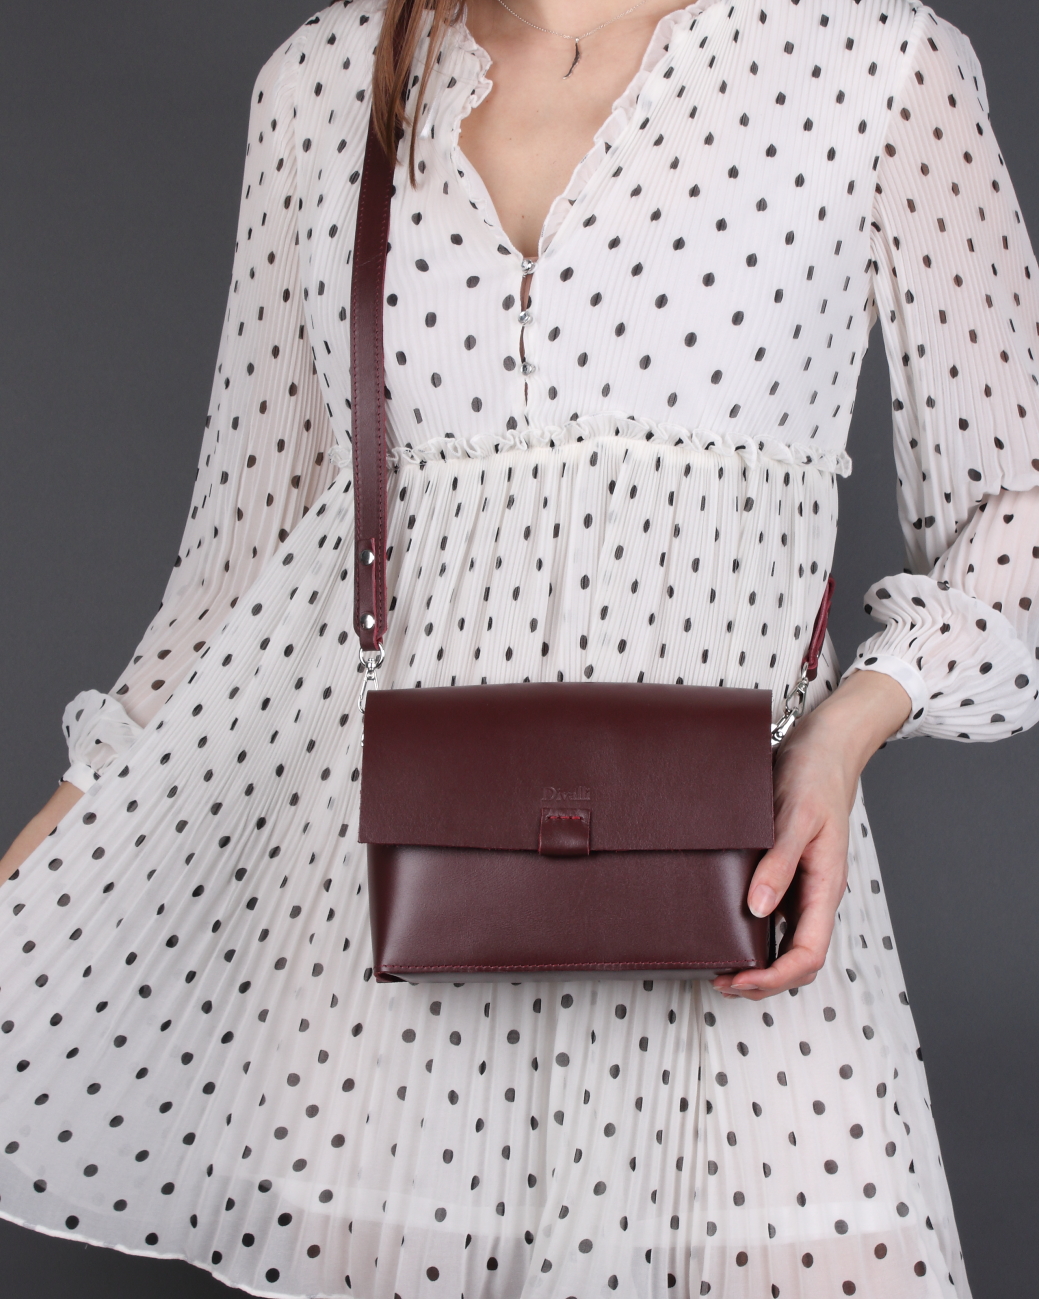 Женская сумка через плечо из натуральной кожи бордовая A005 burgundy